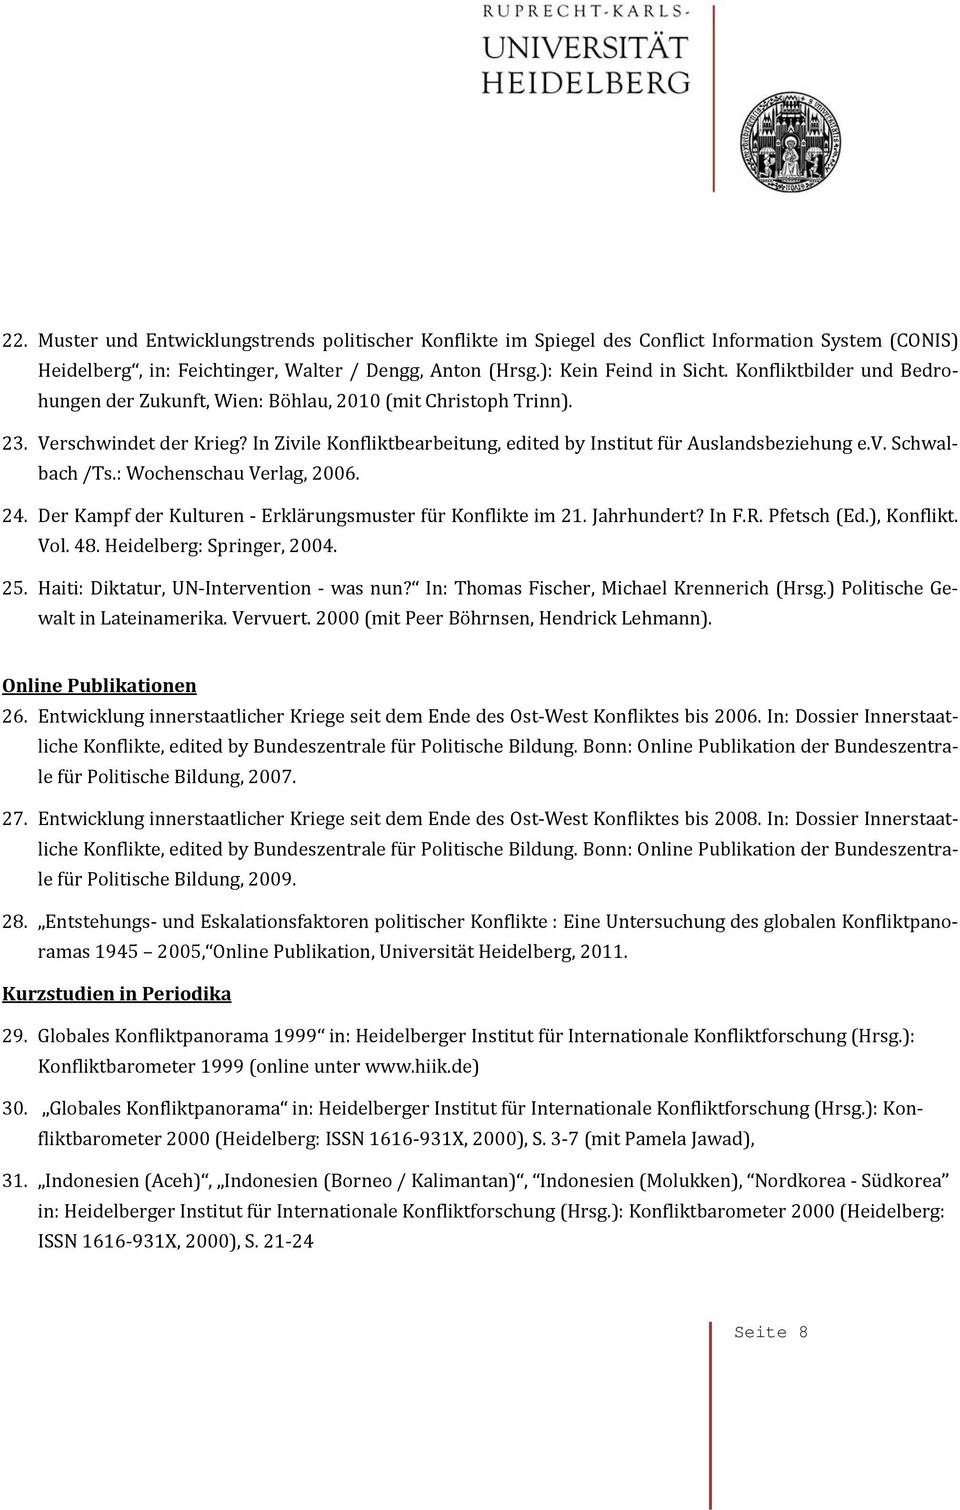 : Wochenschau Verlag, 2006. 24. Der Kampf der Kulturen Erklärungsmuster für Konflikte im 21. Jahrhundert? In F.R. Pfetsch (Ed.), Konflikt. Vol. 48. Heidelberg: Springer, 2004. 25.